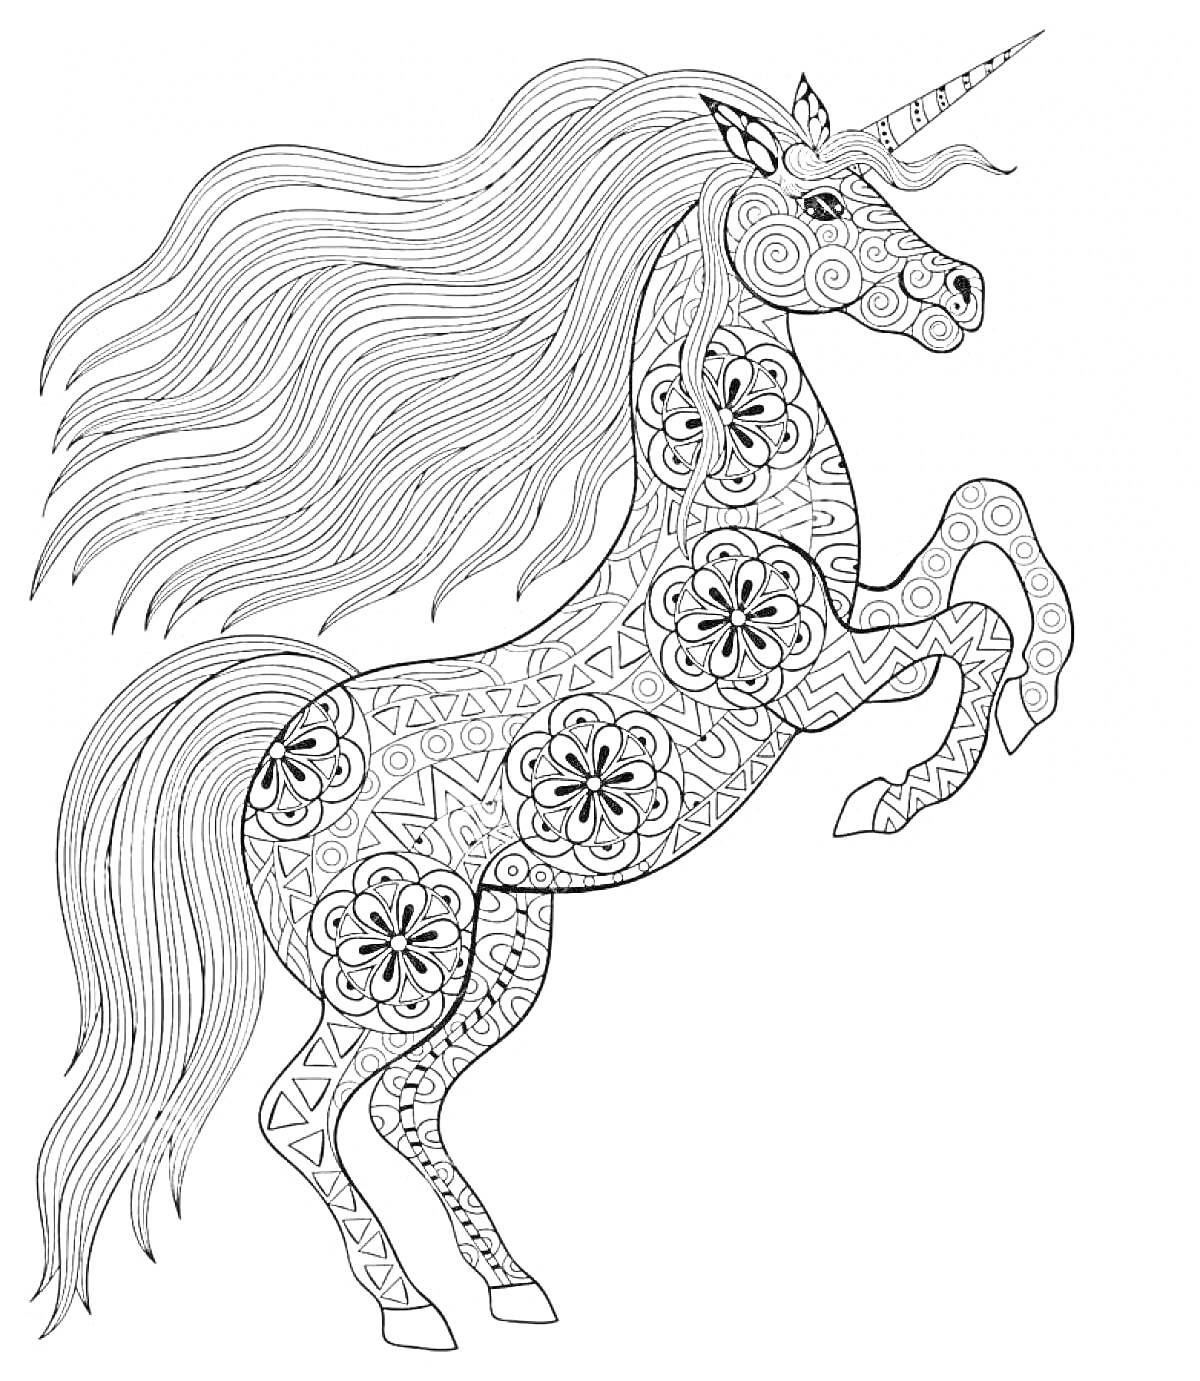 Раскраска Единорог с длинной гривой и геометрическими узорами на теле